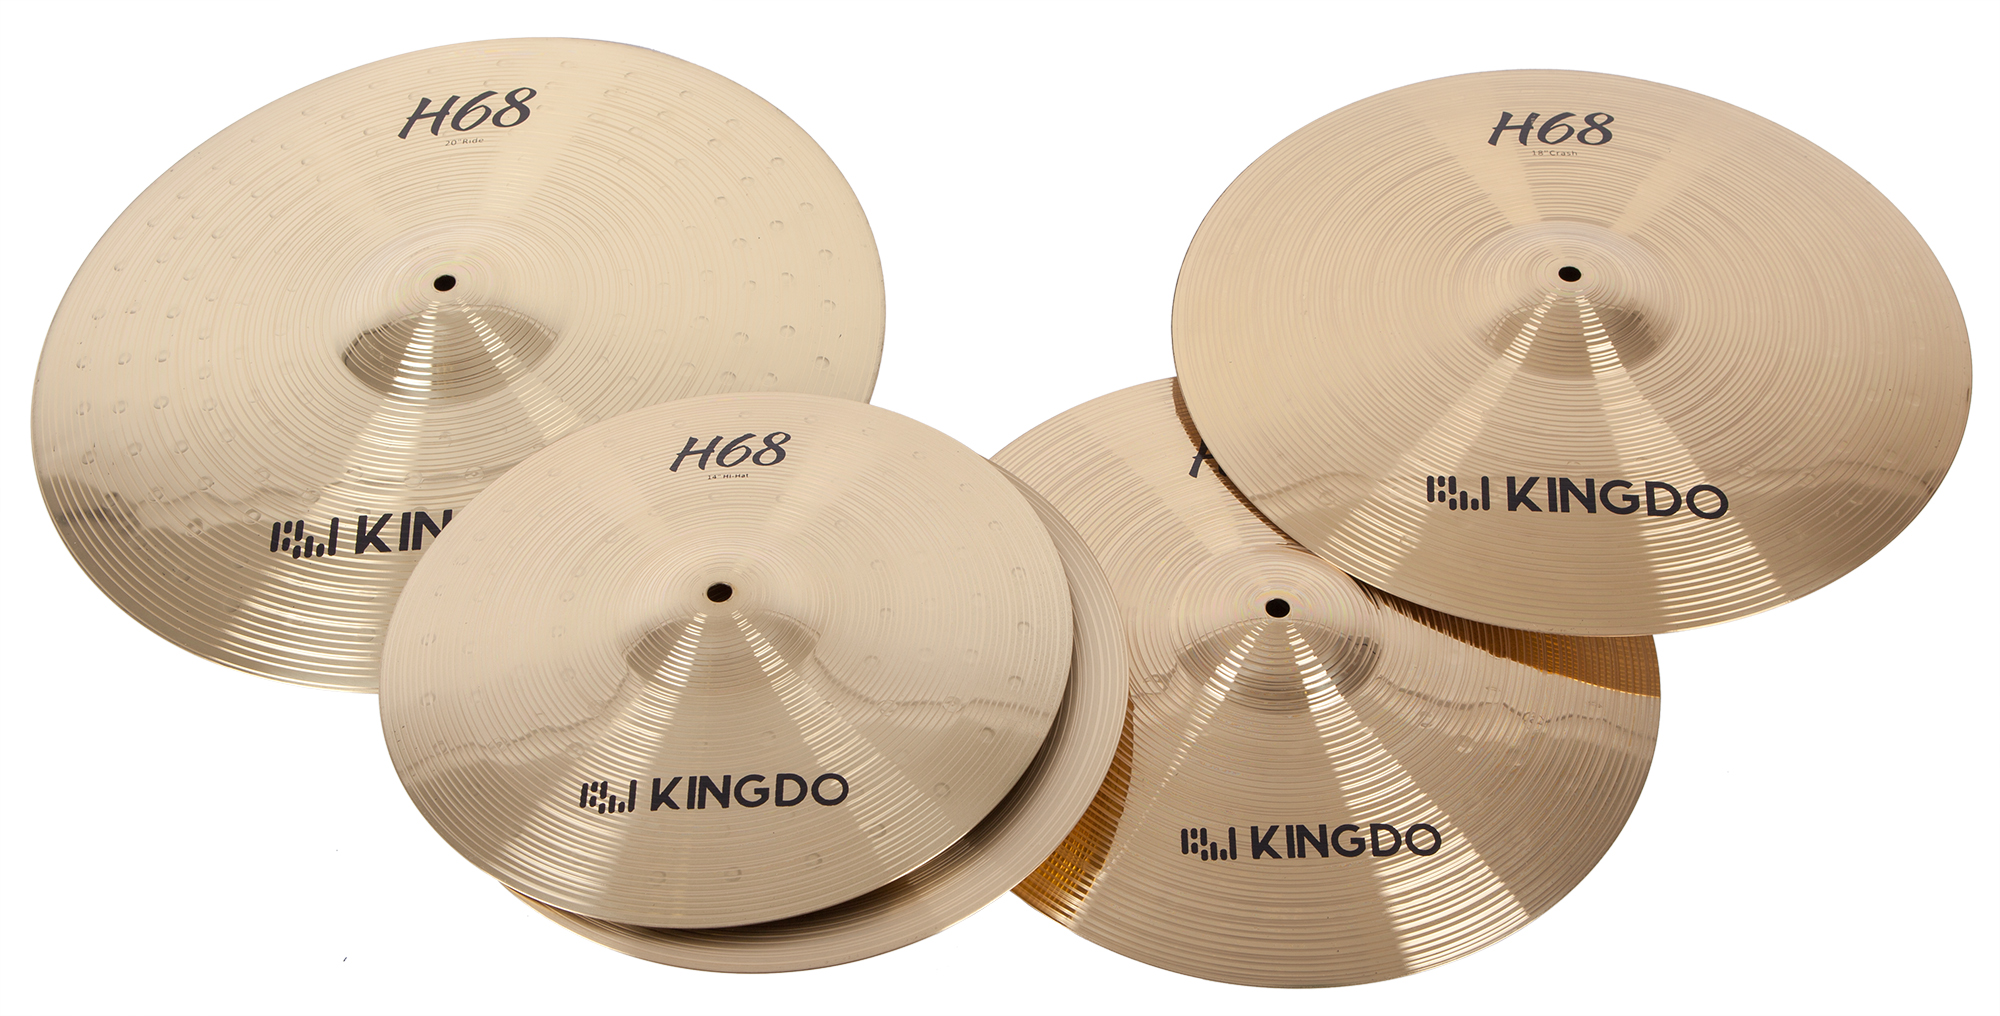 тарелки барабаны для ударных установок kingdo 14 sn8 hi hat Тарелки, барабаны для ударных установок KINGDO H68 SET 14